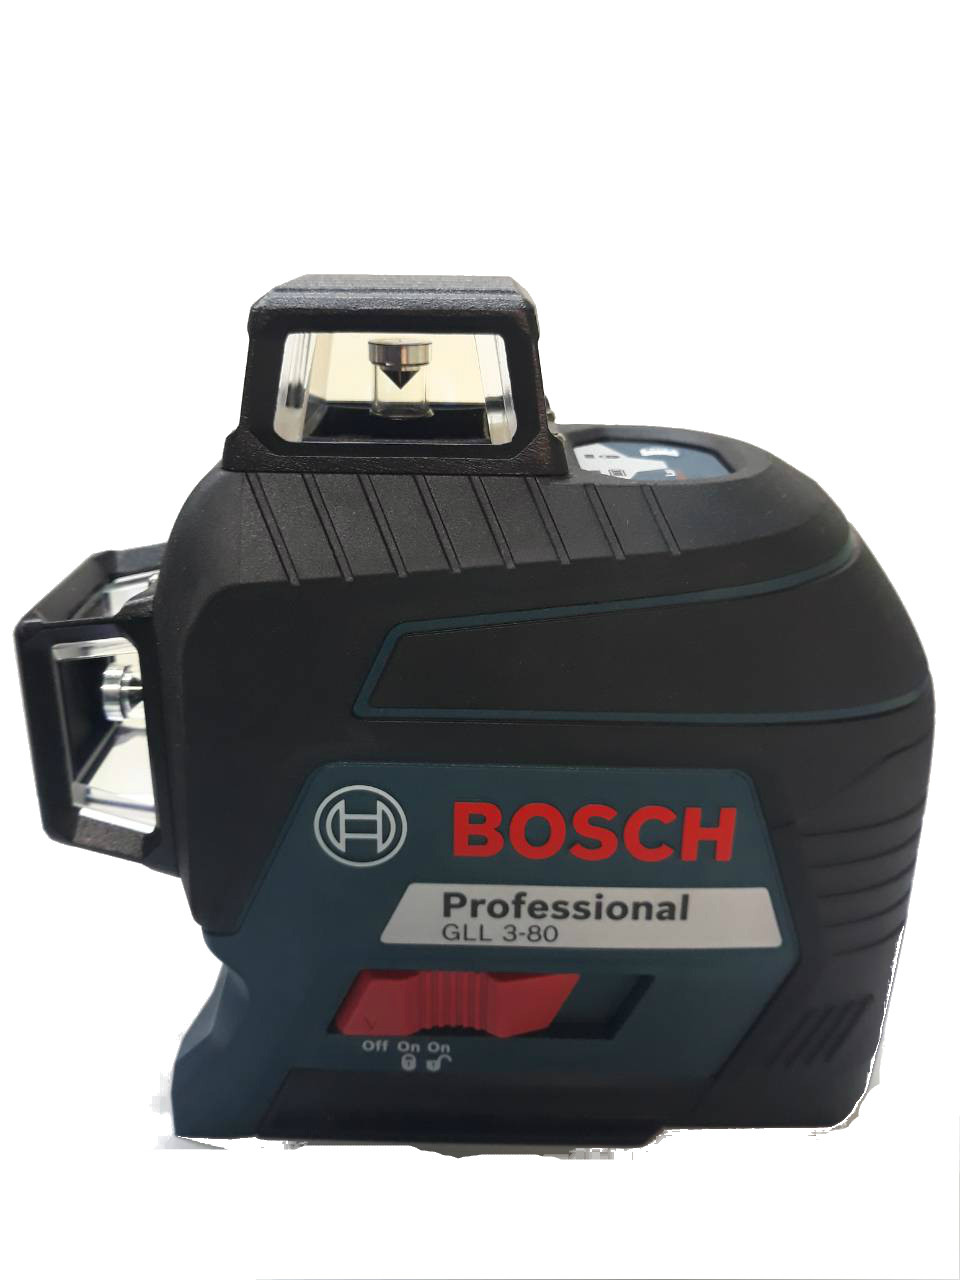 Лазерний рівень Bosch GLL 3-80 Professional красний луч 3 360 градусів,пластиковий чемодан